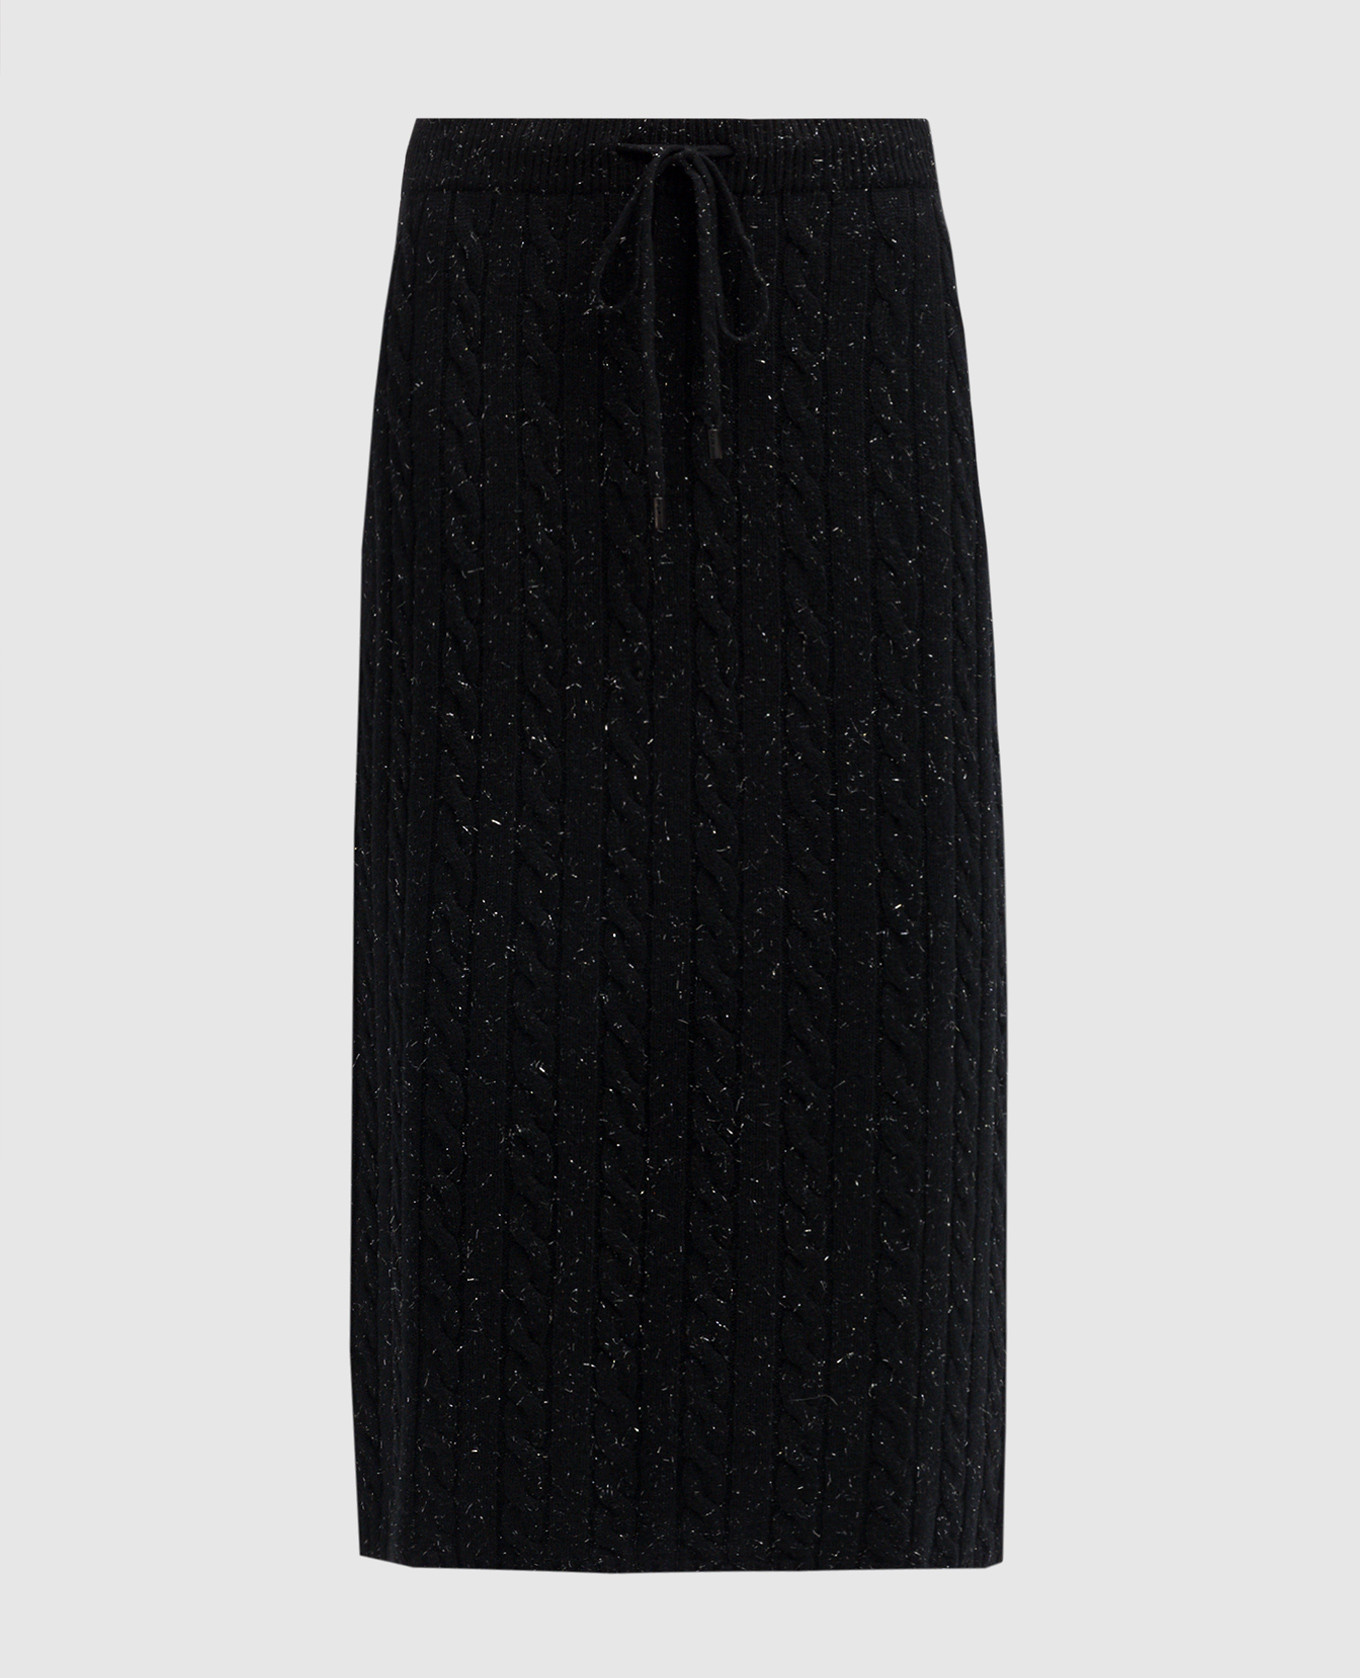 Черная юбка с шерстью, шелком и кашемиром с фактурным узором и люрексом.